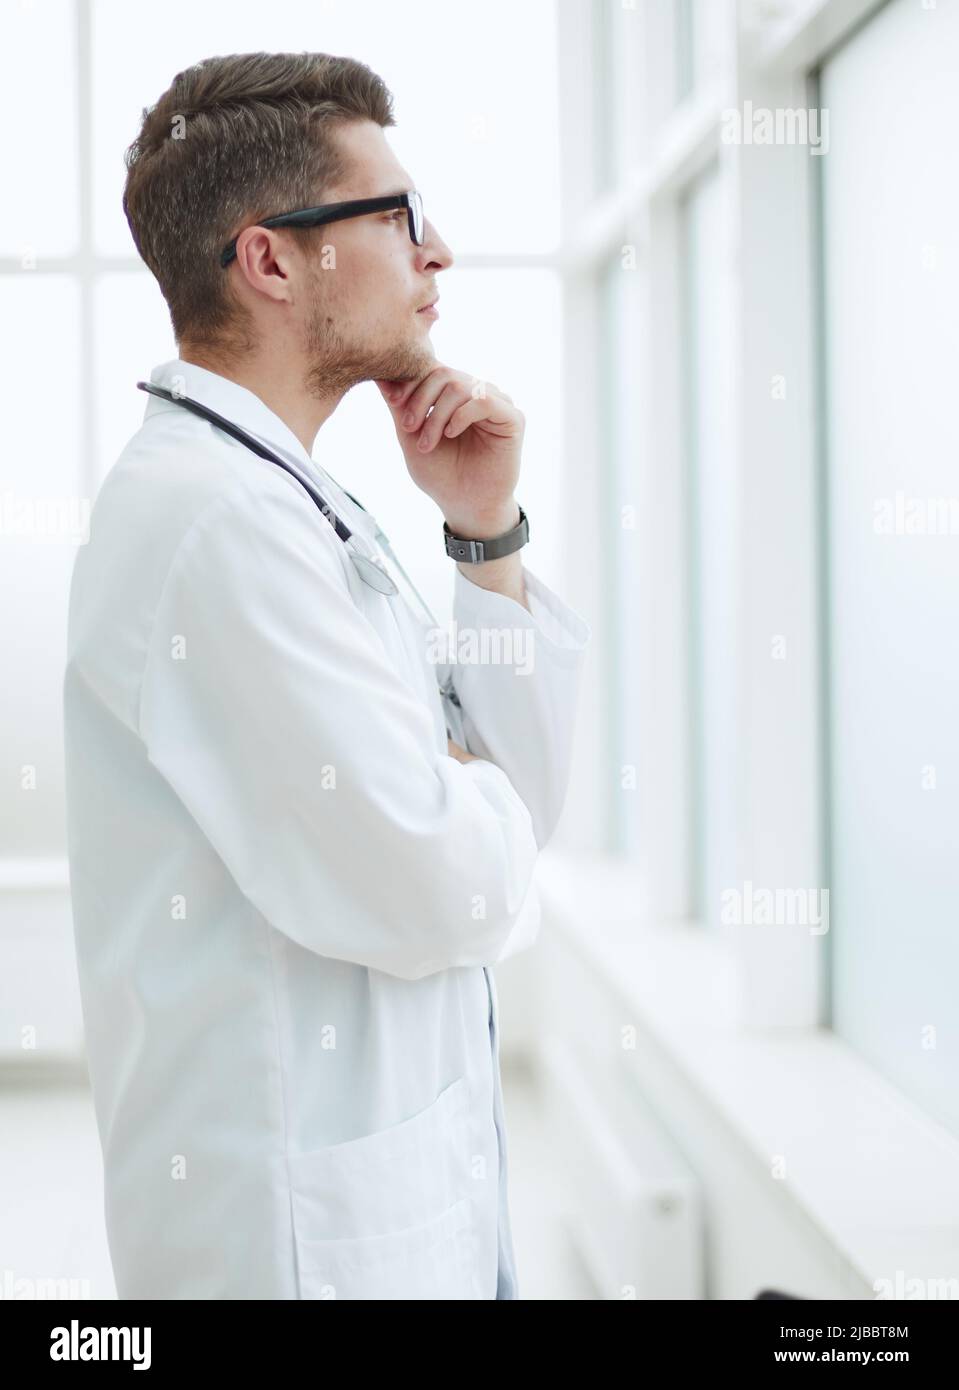 Hübscher junger Arzt im medizinischen Büro Stockfoto